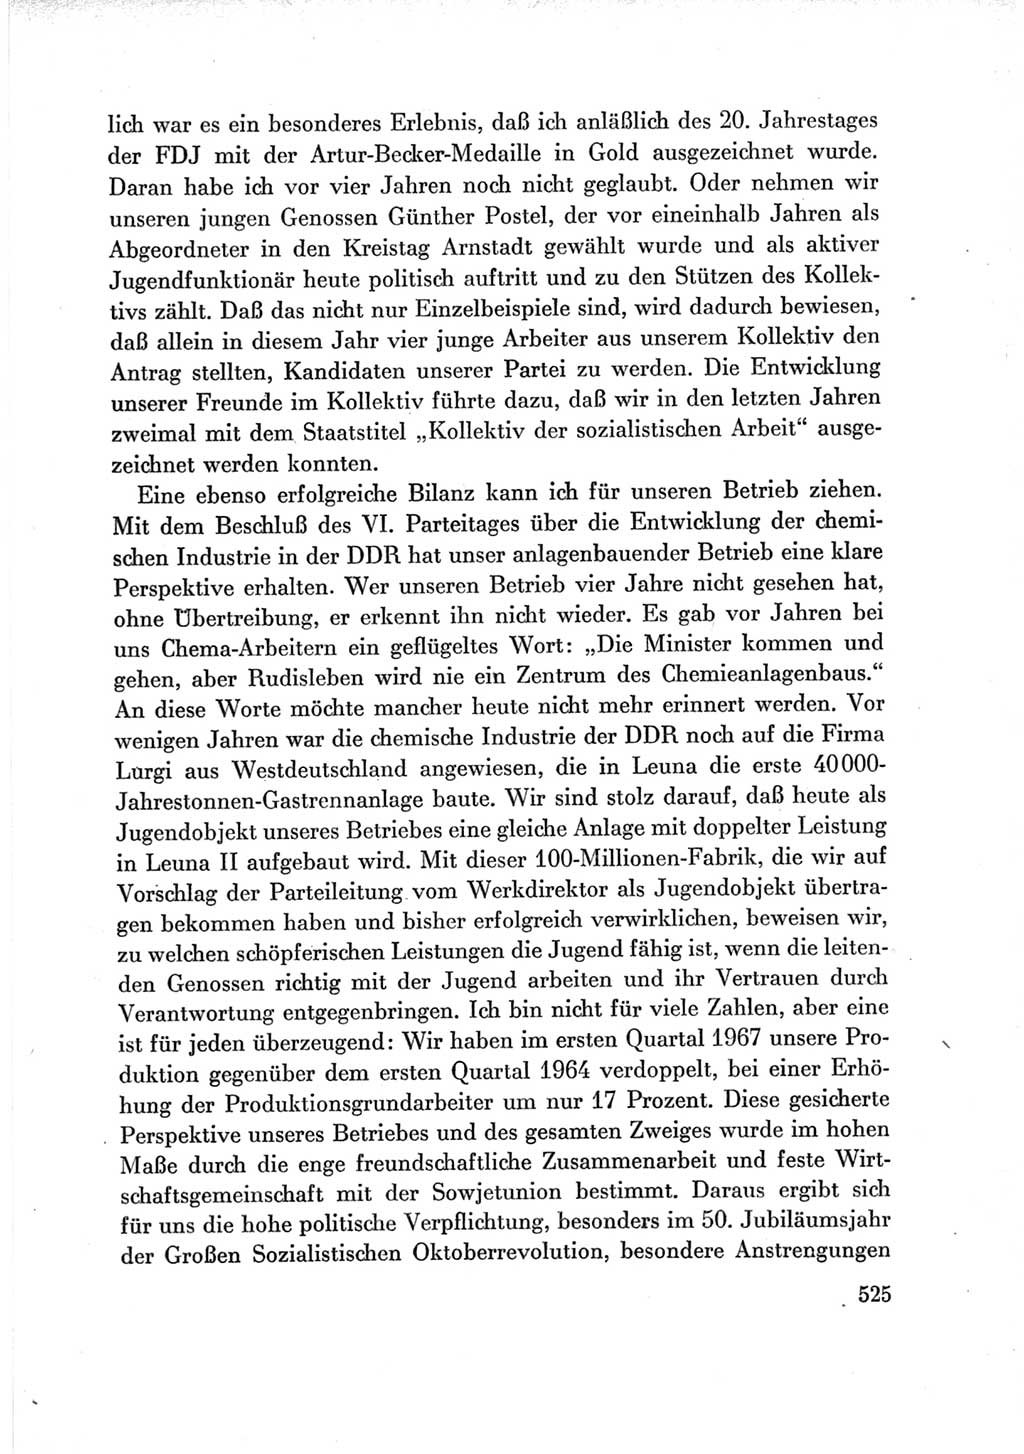 Protokoll der Verhandlungen des Ⅶ. Parteitages der Sozialistischen Einheitspartei Deutschlands (SED) [Deutsche Demokratische Republik (DDR)] 1967, Band Ⅲ, Seite 525 (Prot. Verh. Ⅶ. PT SED DDR 1967, Bd. Ⅲ, S. 525)